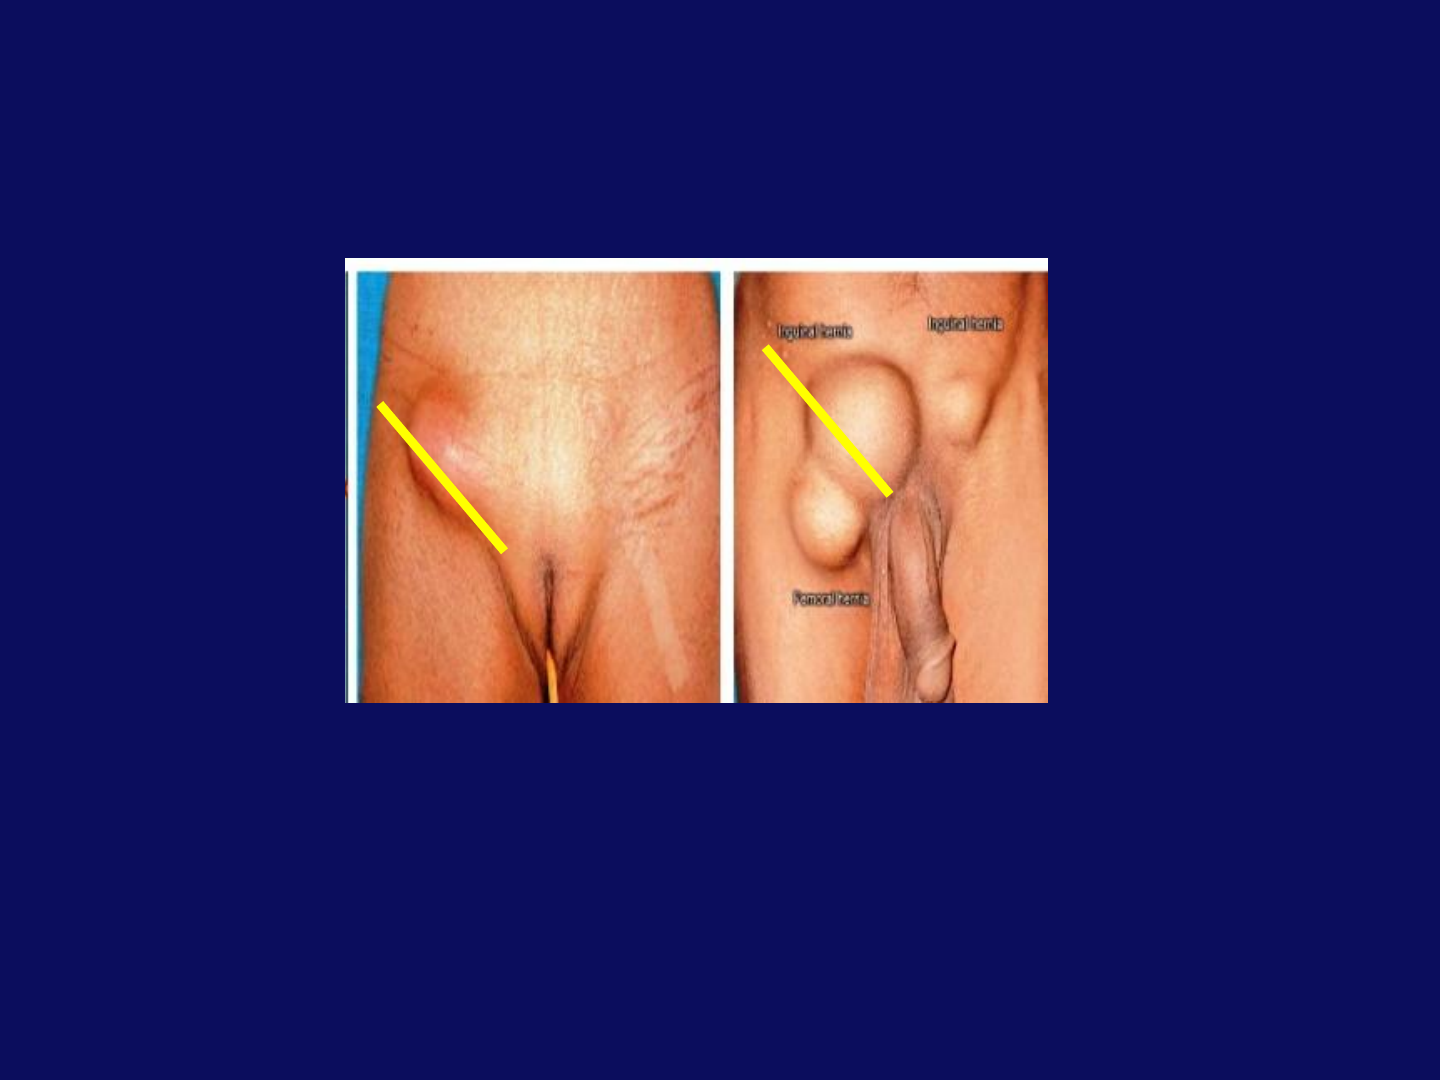 Hernia Clinic - Cirurgia Geral e Digestiva - Perguntas e respostas - HÉRNIA  INGUINAL Hérnias inguinais ou na virilha, ocorrem devido à fraqueza  muscular na parte inferior da parede abdominal, na área